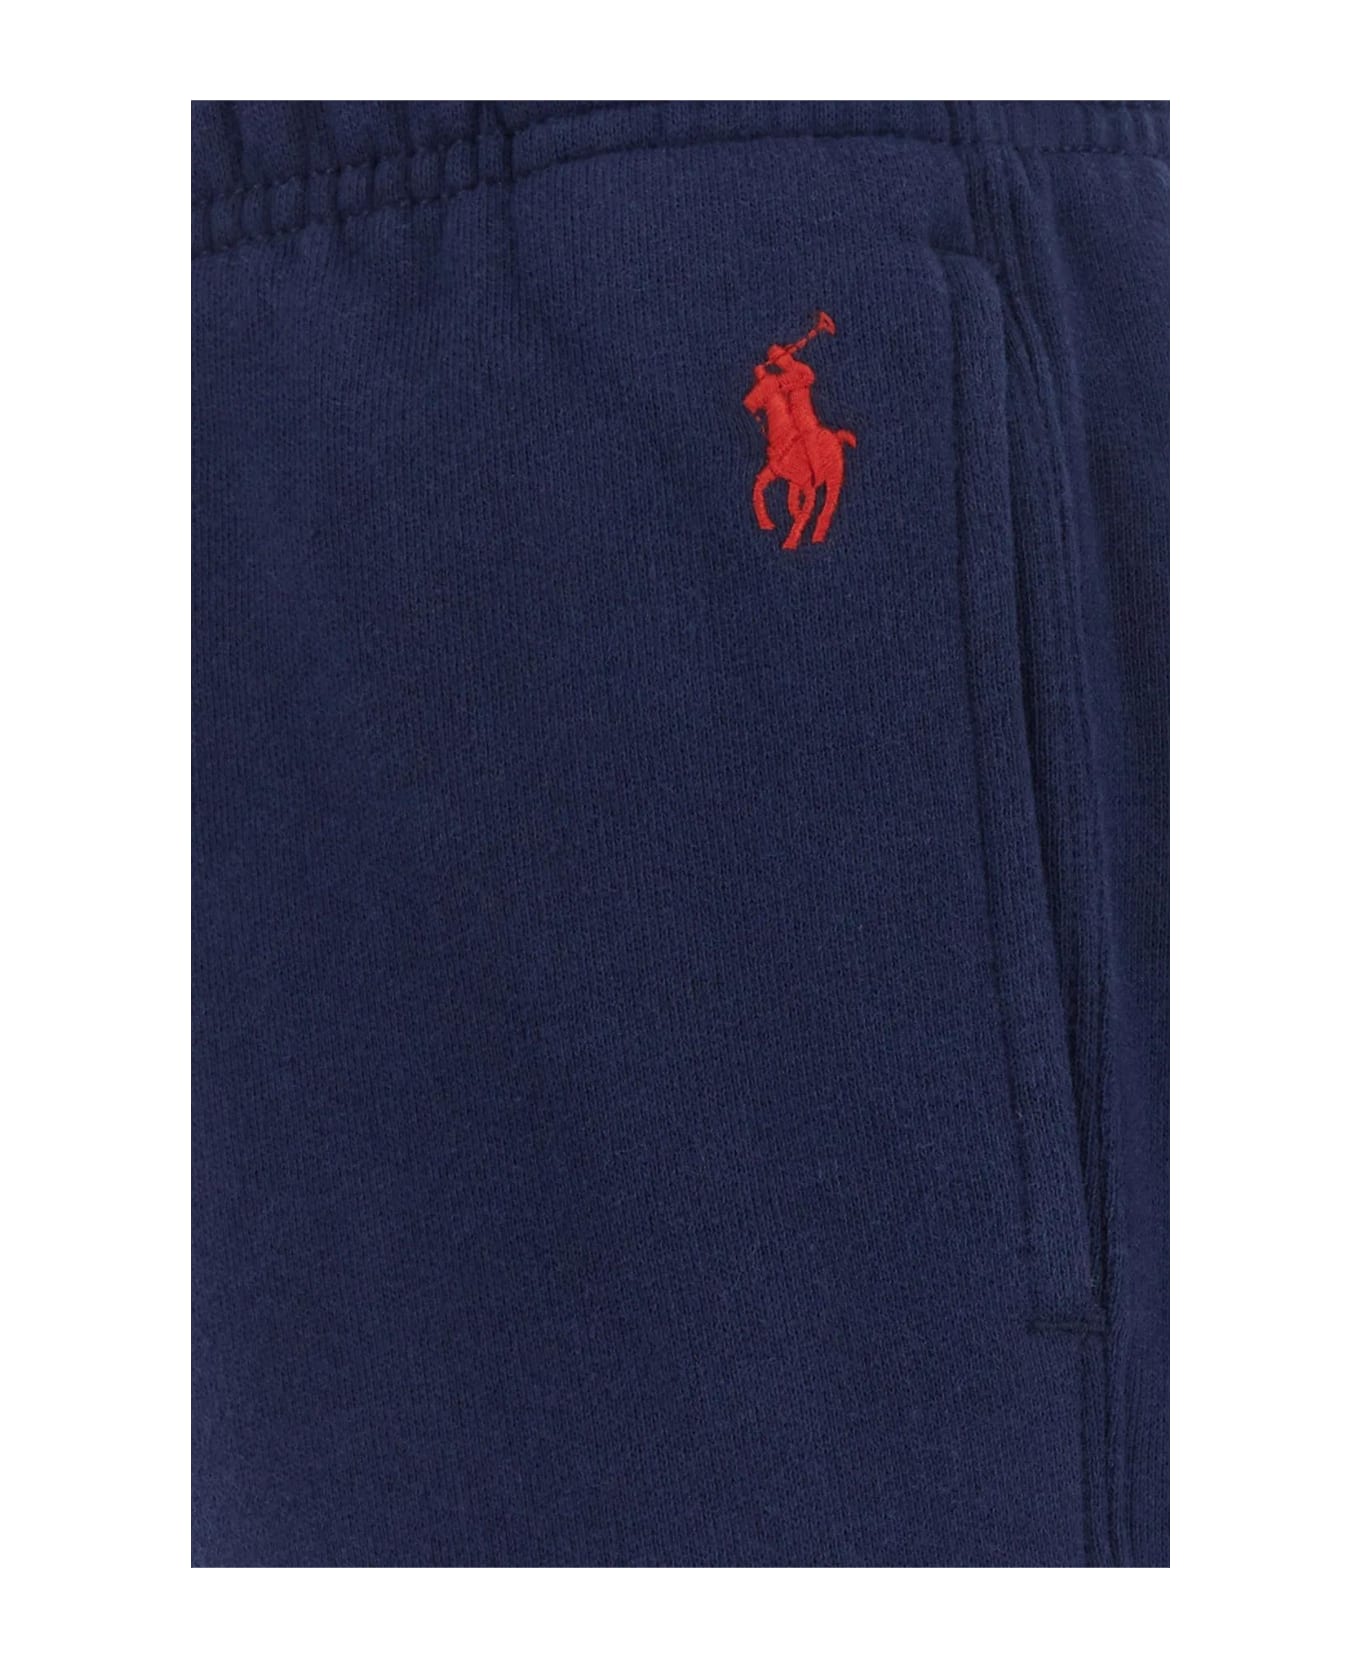 Polo Ralph Lauren Navy Blue Cotton Blend Joggers Polo Ralph Lauren スウェットパンツ